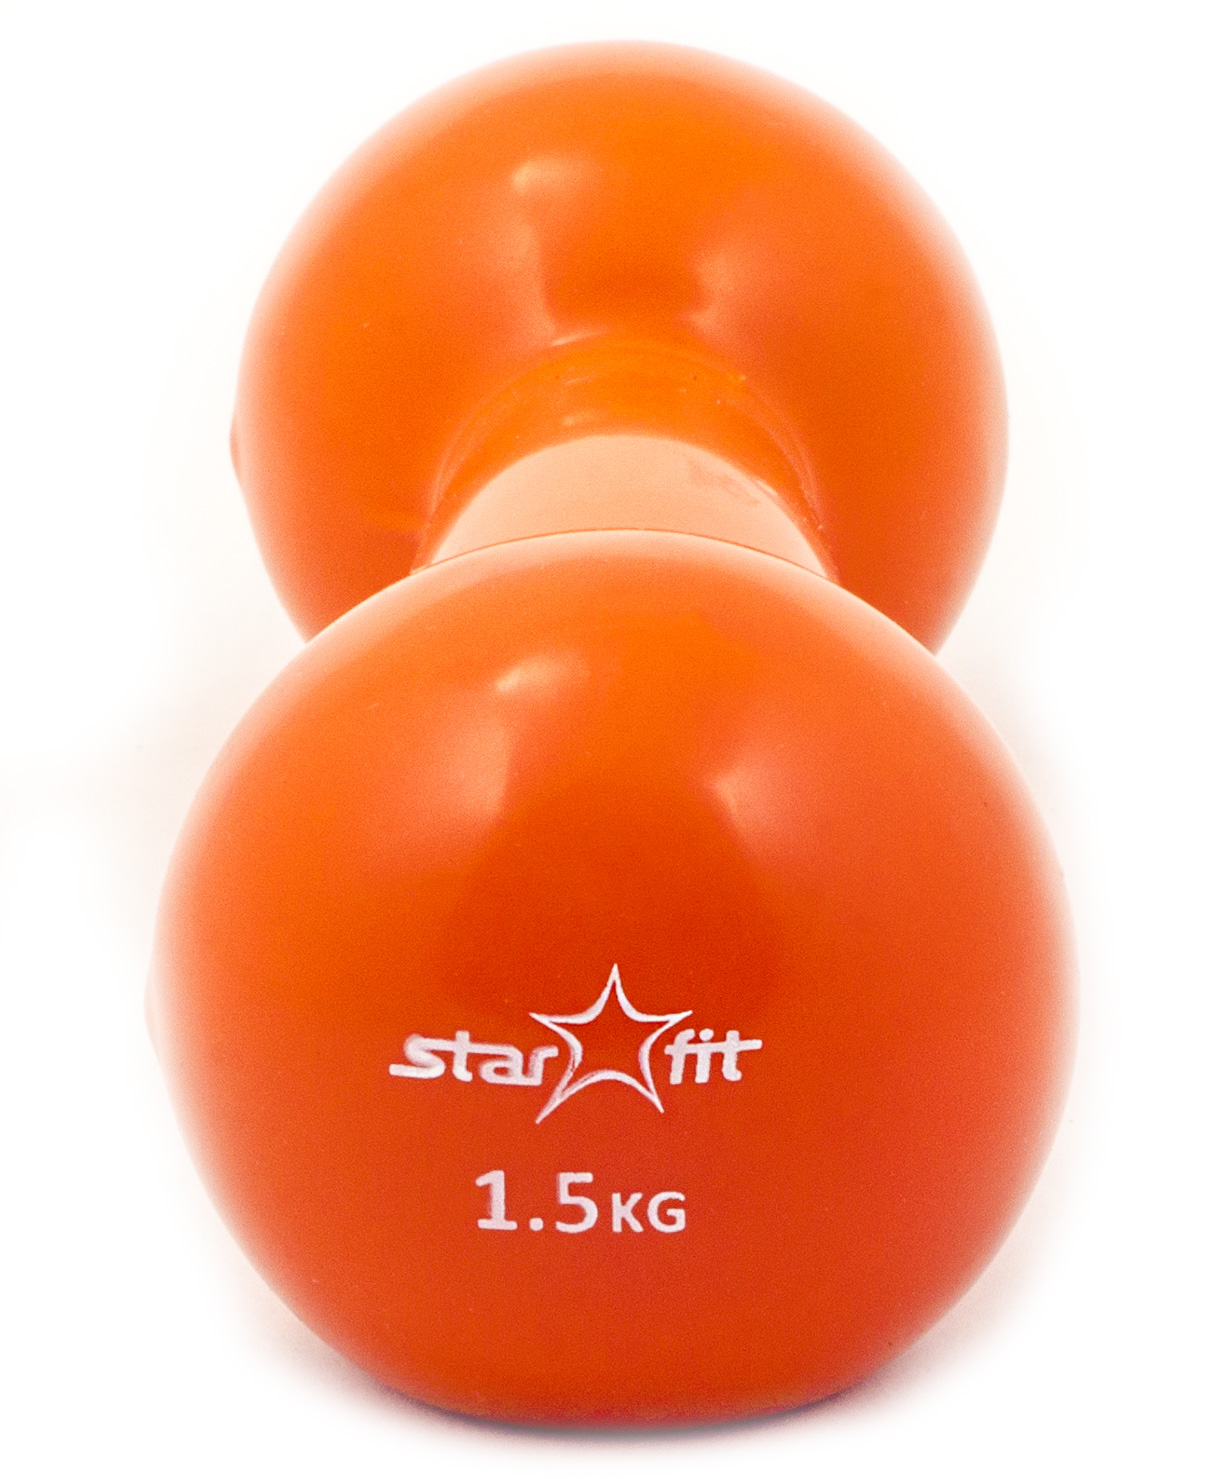 Starfit гантели. Гантели Starfit 1.5 кг. Гантель виниловая оранжевая 1.5кг 0,5кг. Гантель цельнолитая Starfit чугунная 1.5 кг. Фитнес гантели Star.